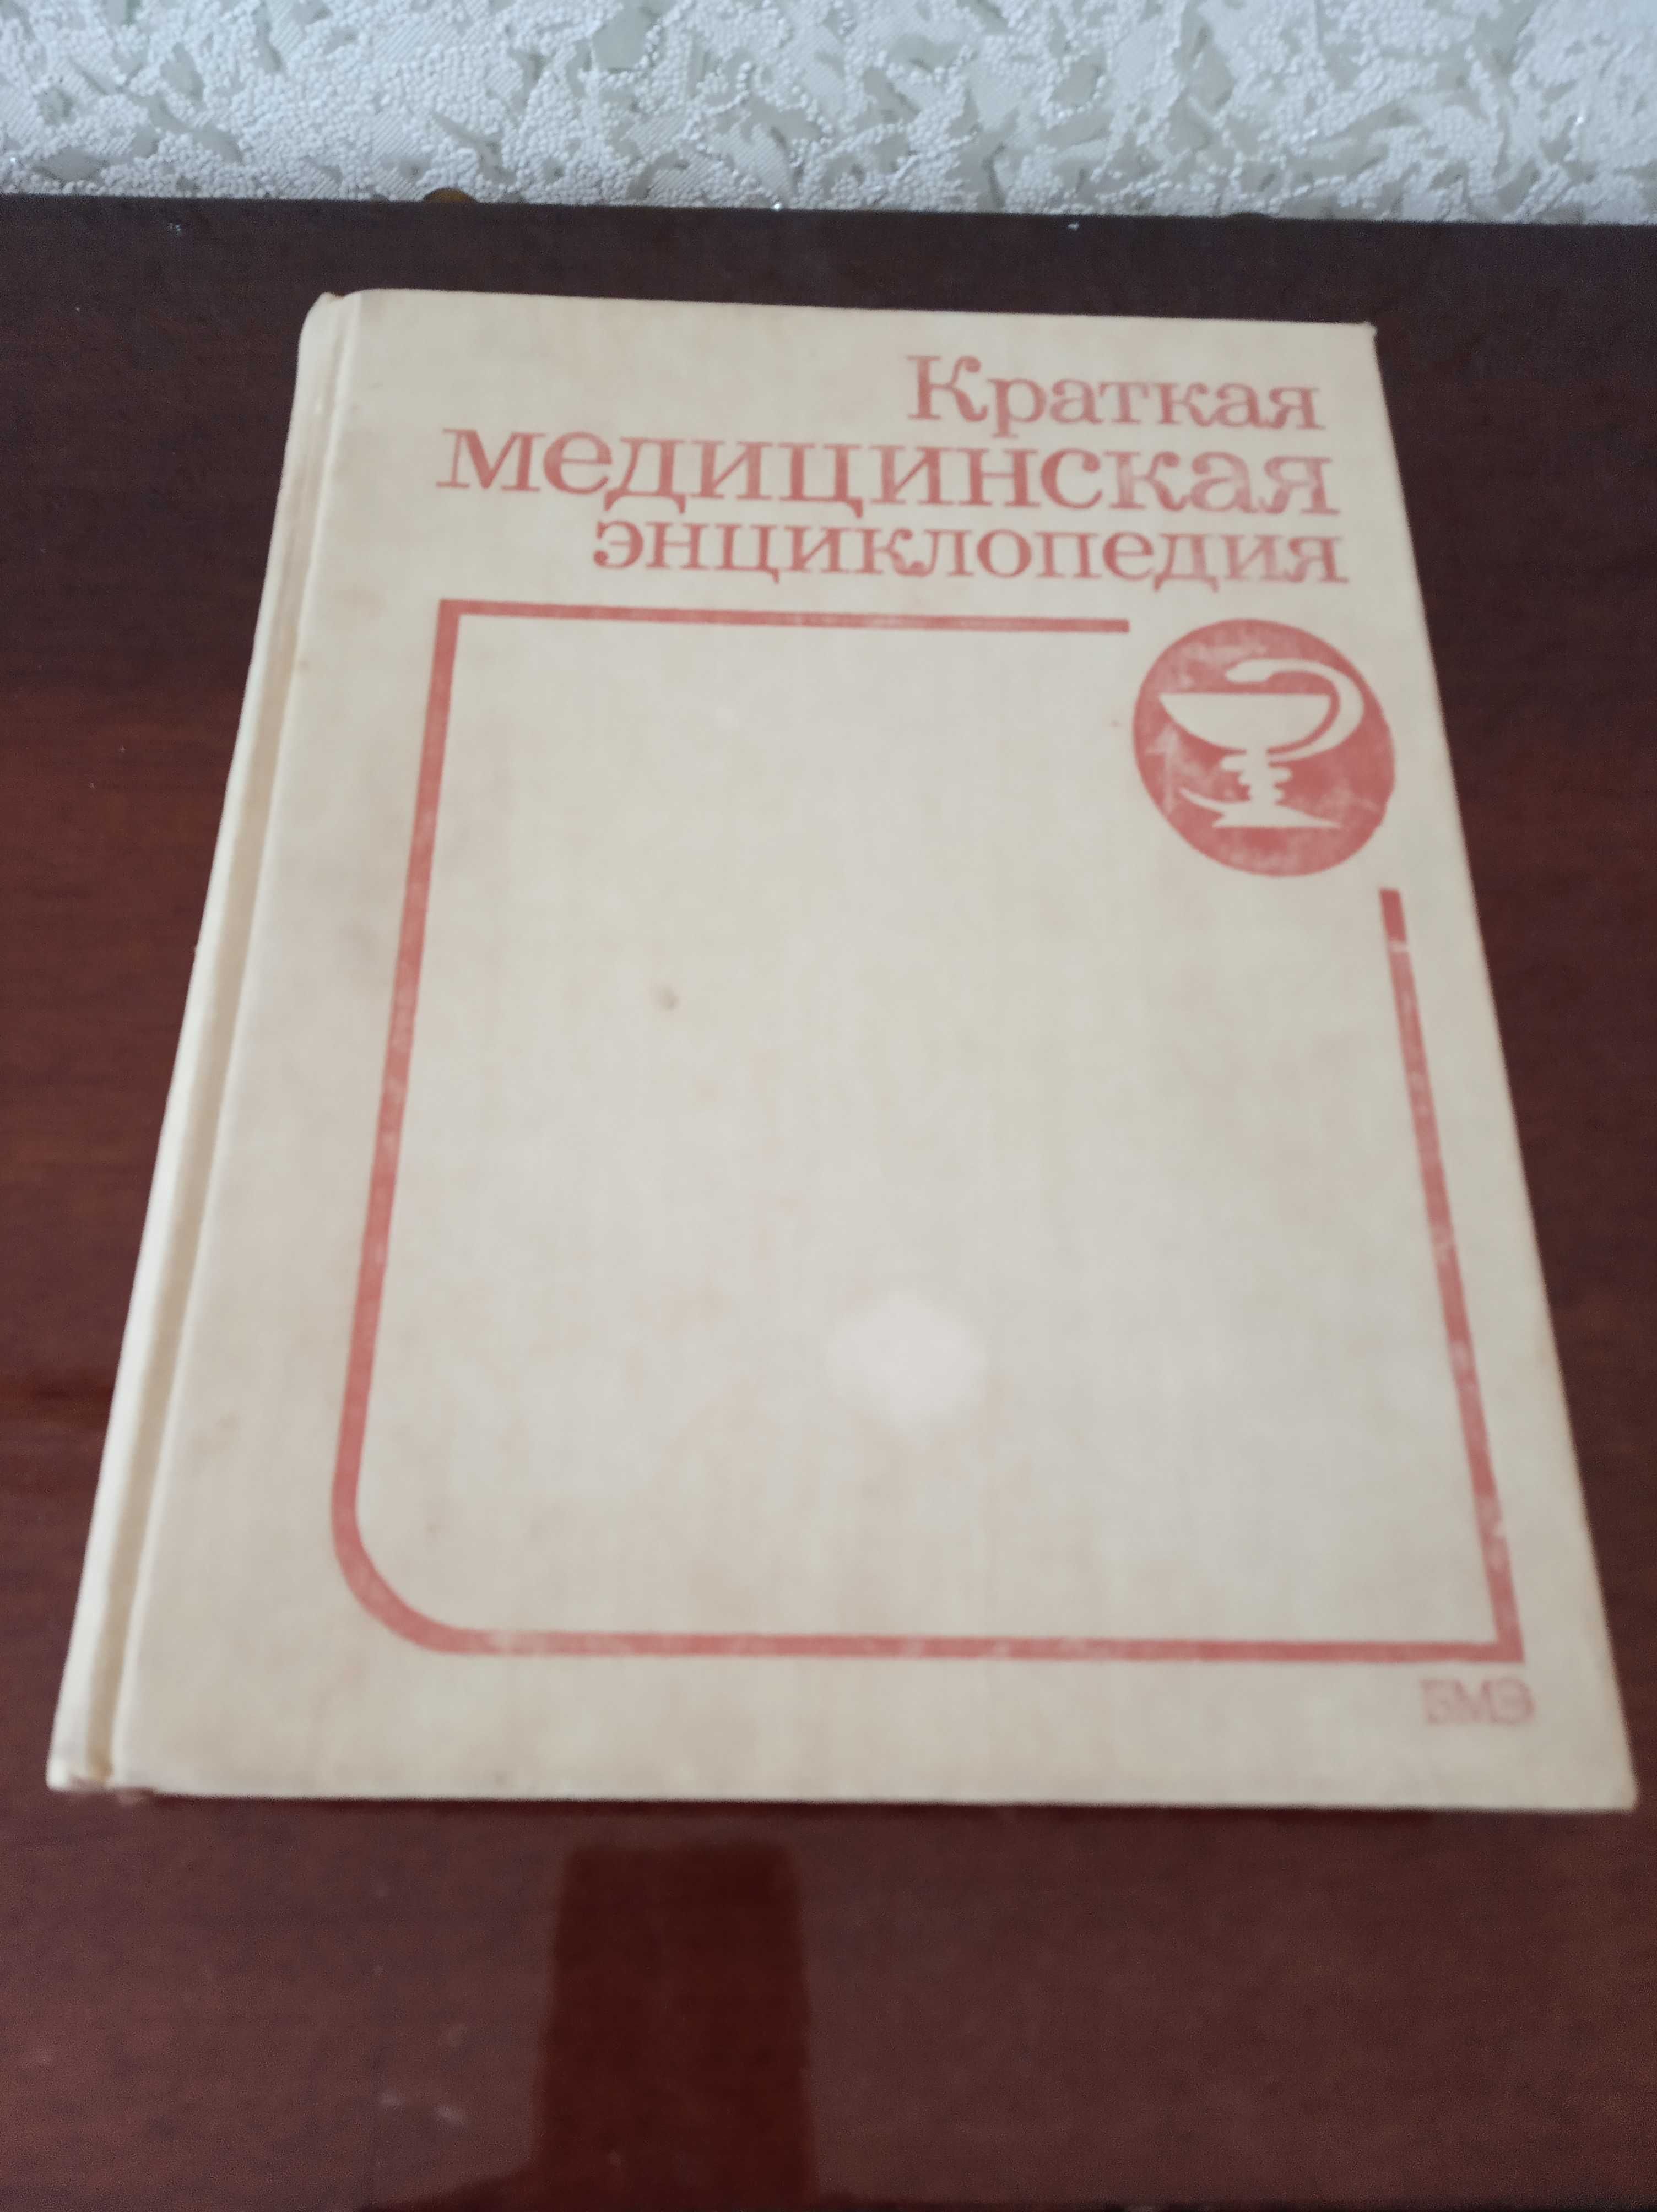 Продаю медицинскую энциклопедию 1989 год Московского издательства